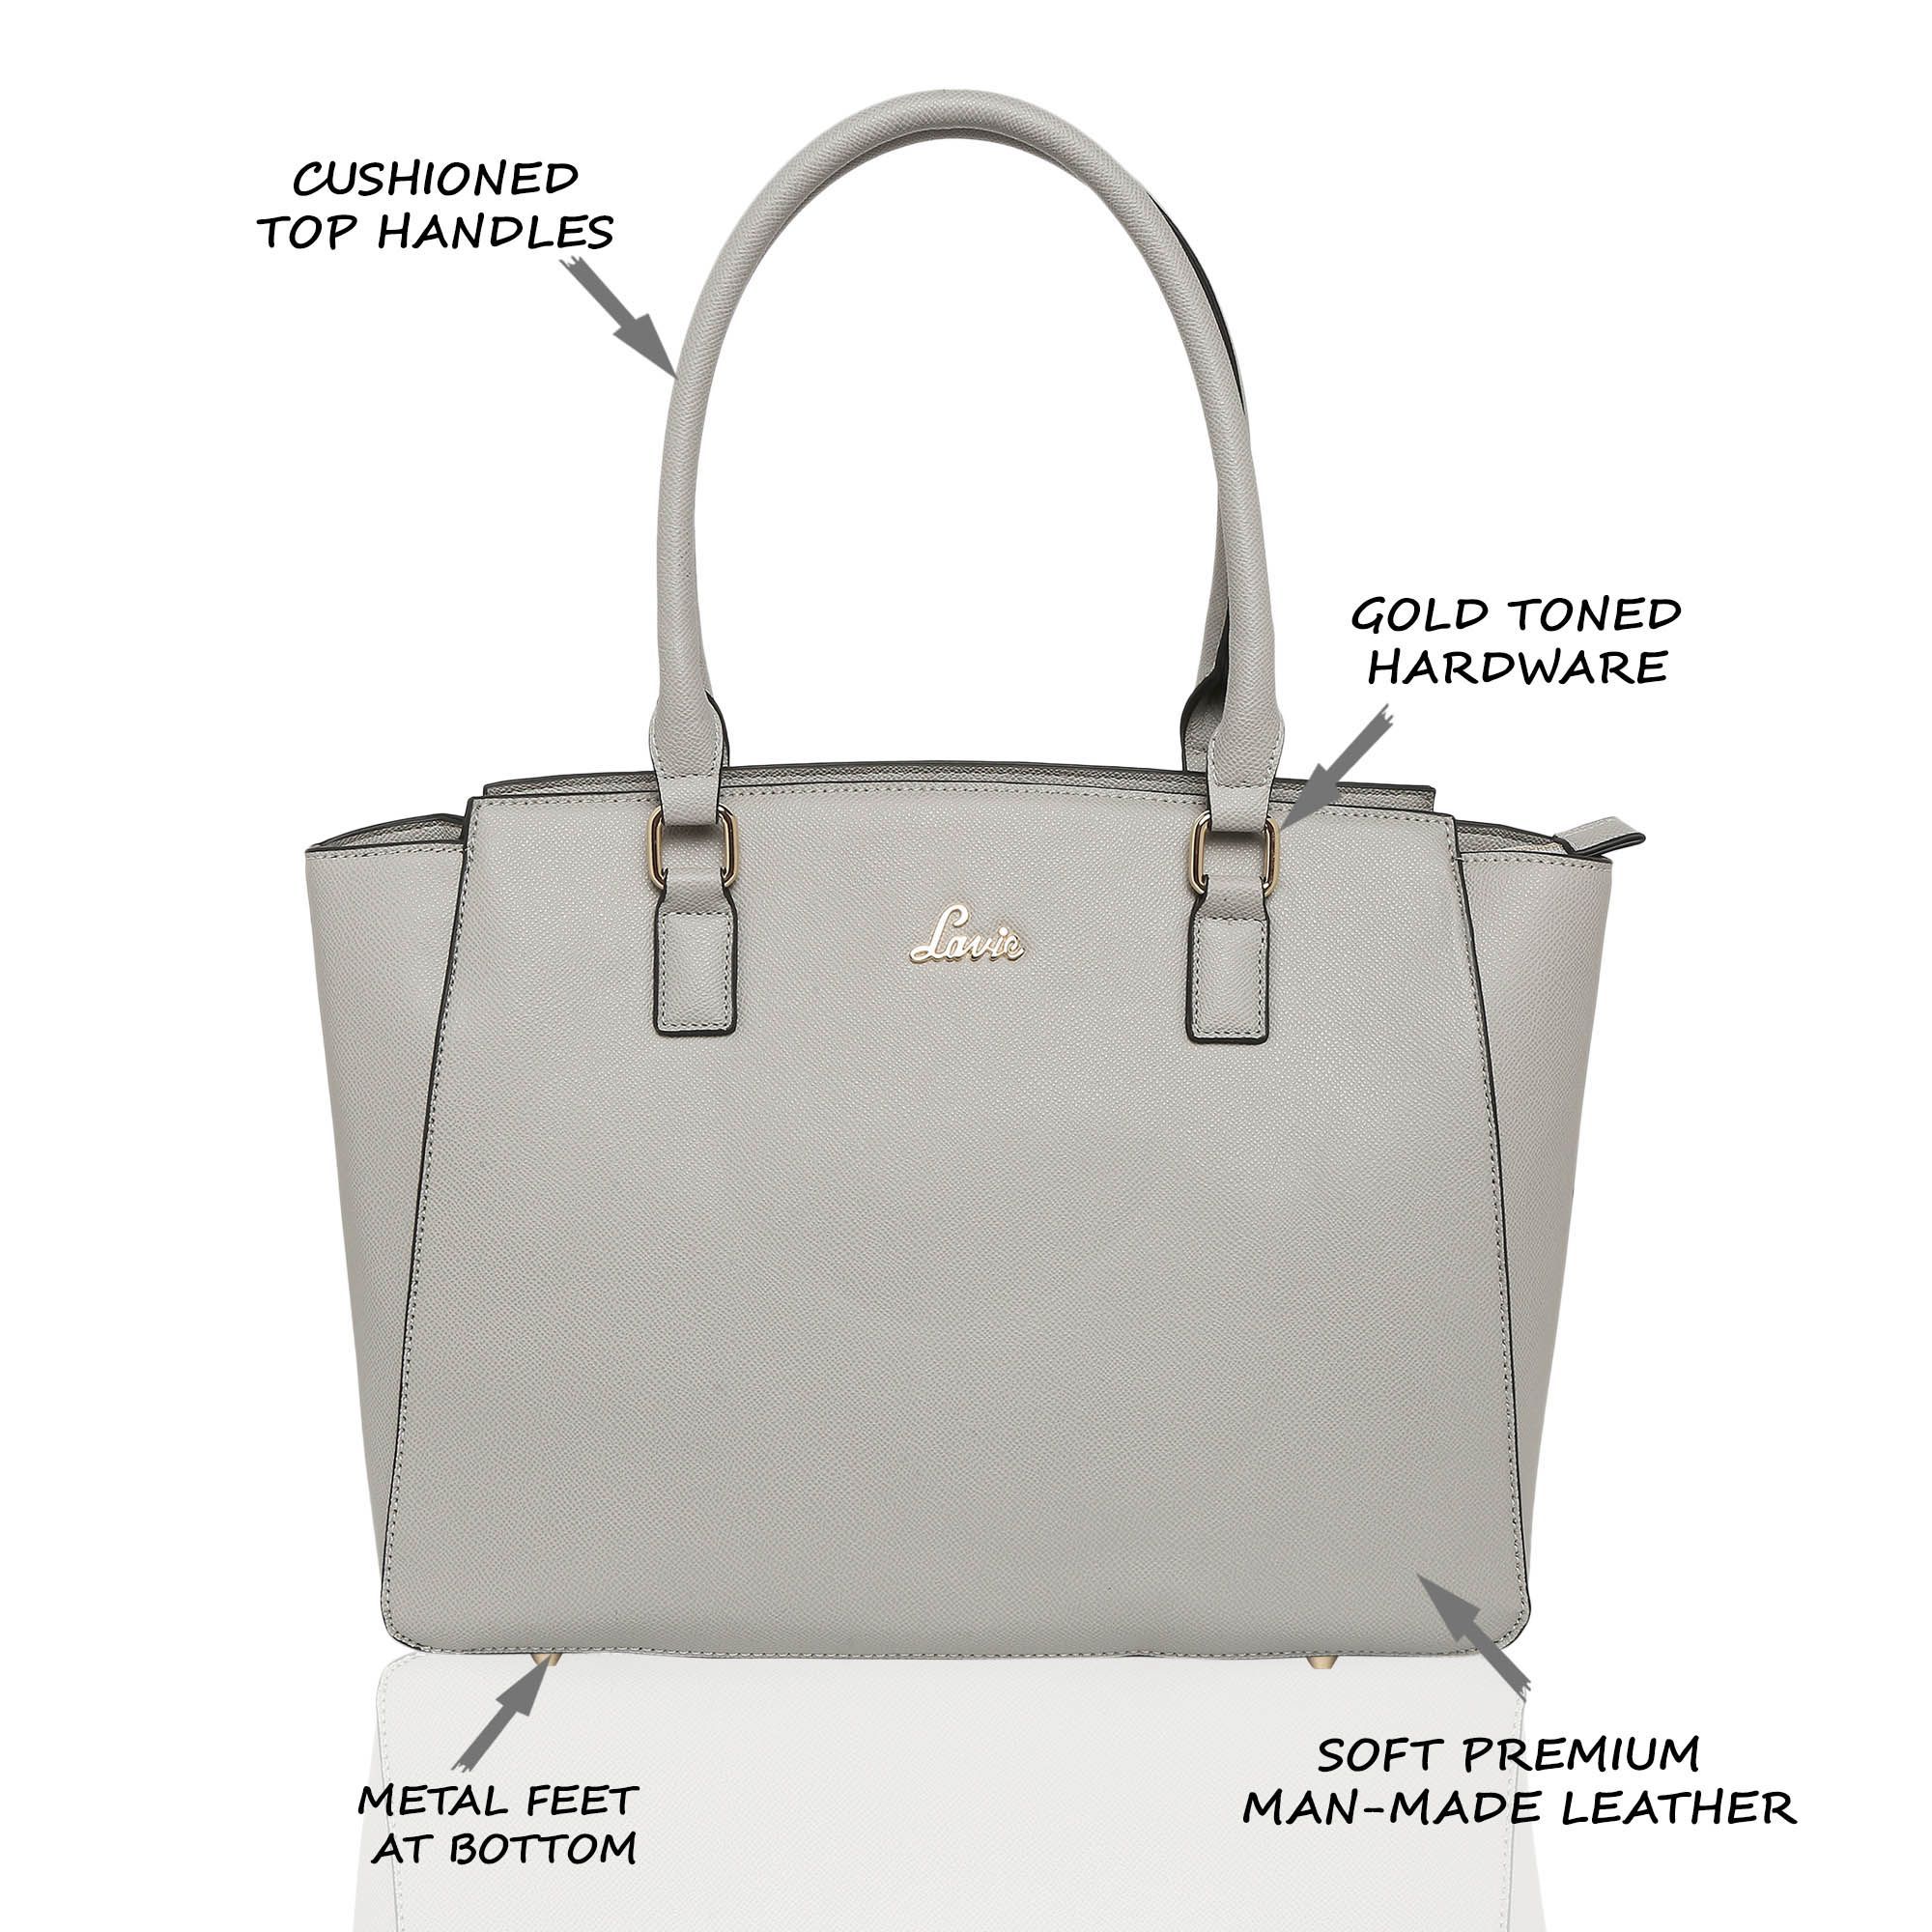 Lavie Women's Hailon Large Tote Bag | Ladies Purse Handbag, Beige, L :  Clothing, Shoes & Jewelry - Amazon.com